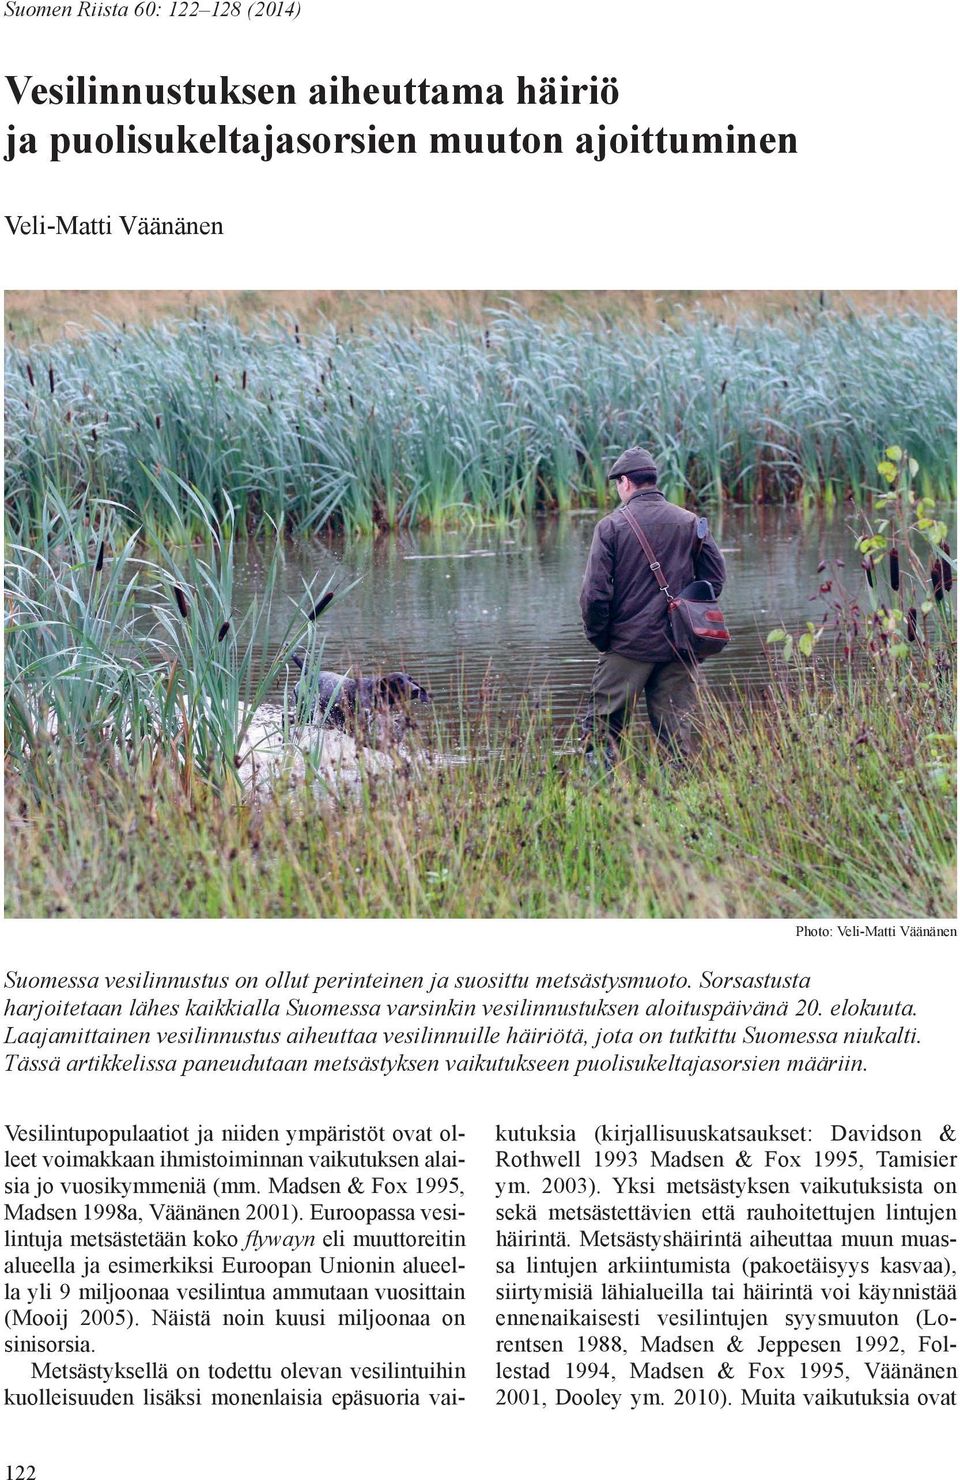 Laajamittainen vesilinnustus aiheuttaa vesilinnuille häiriötä, jota on tutkittu Suomessa niukalti. Tässä artikkelissa paneudutaan metsästyksen vaikutukseen puolisukeltajasorsien määriin.